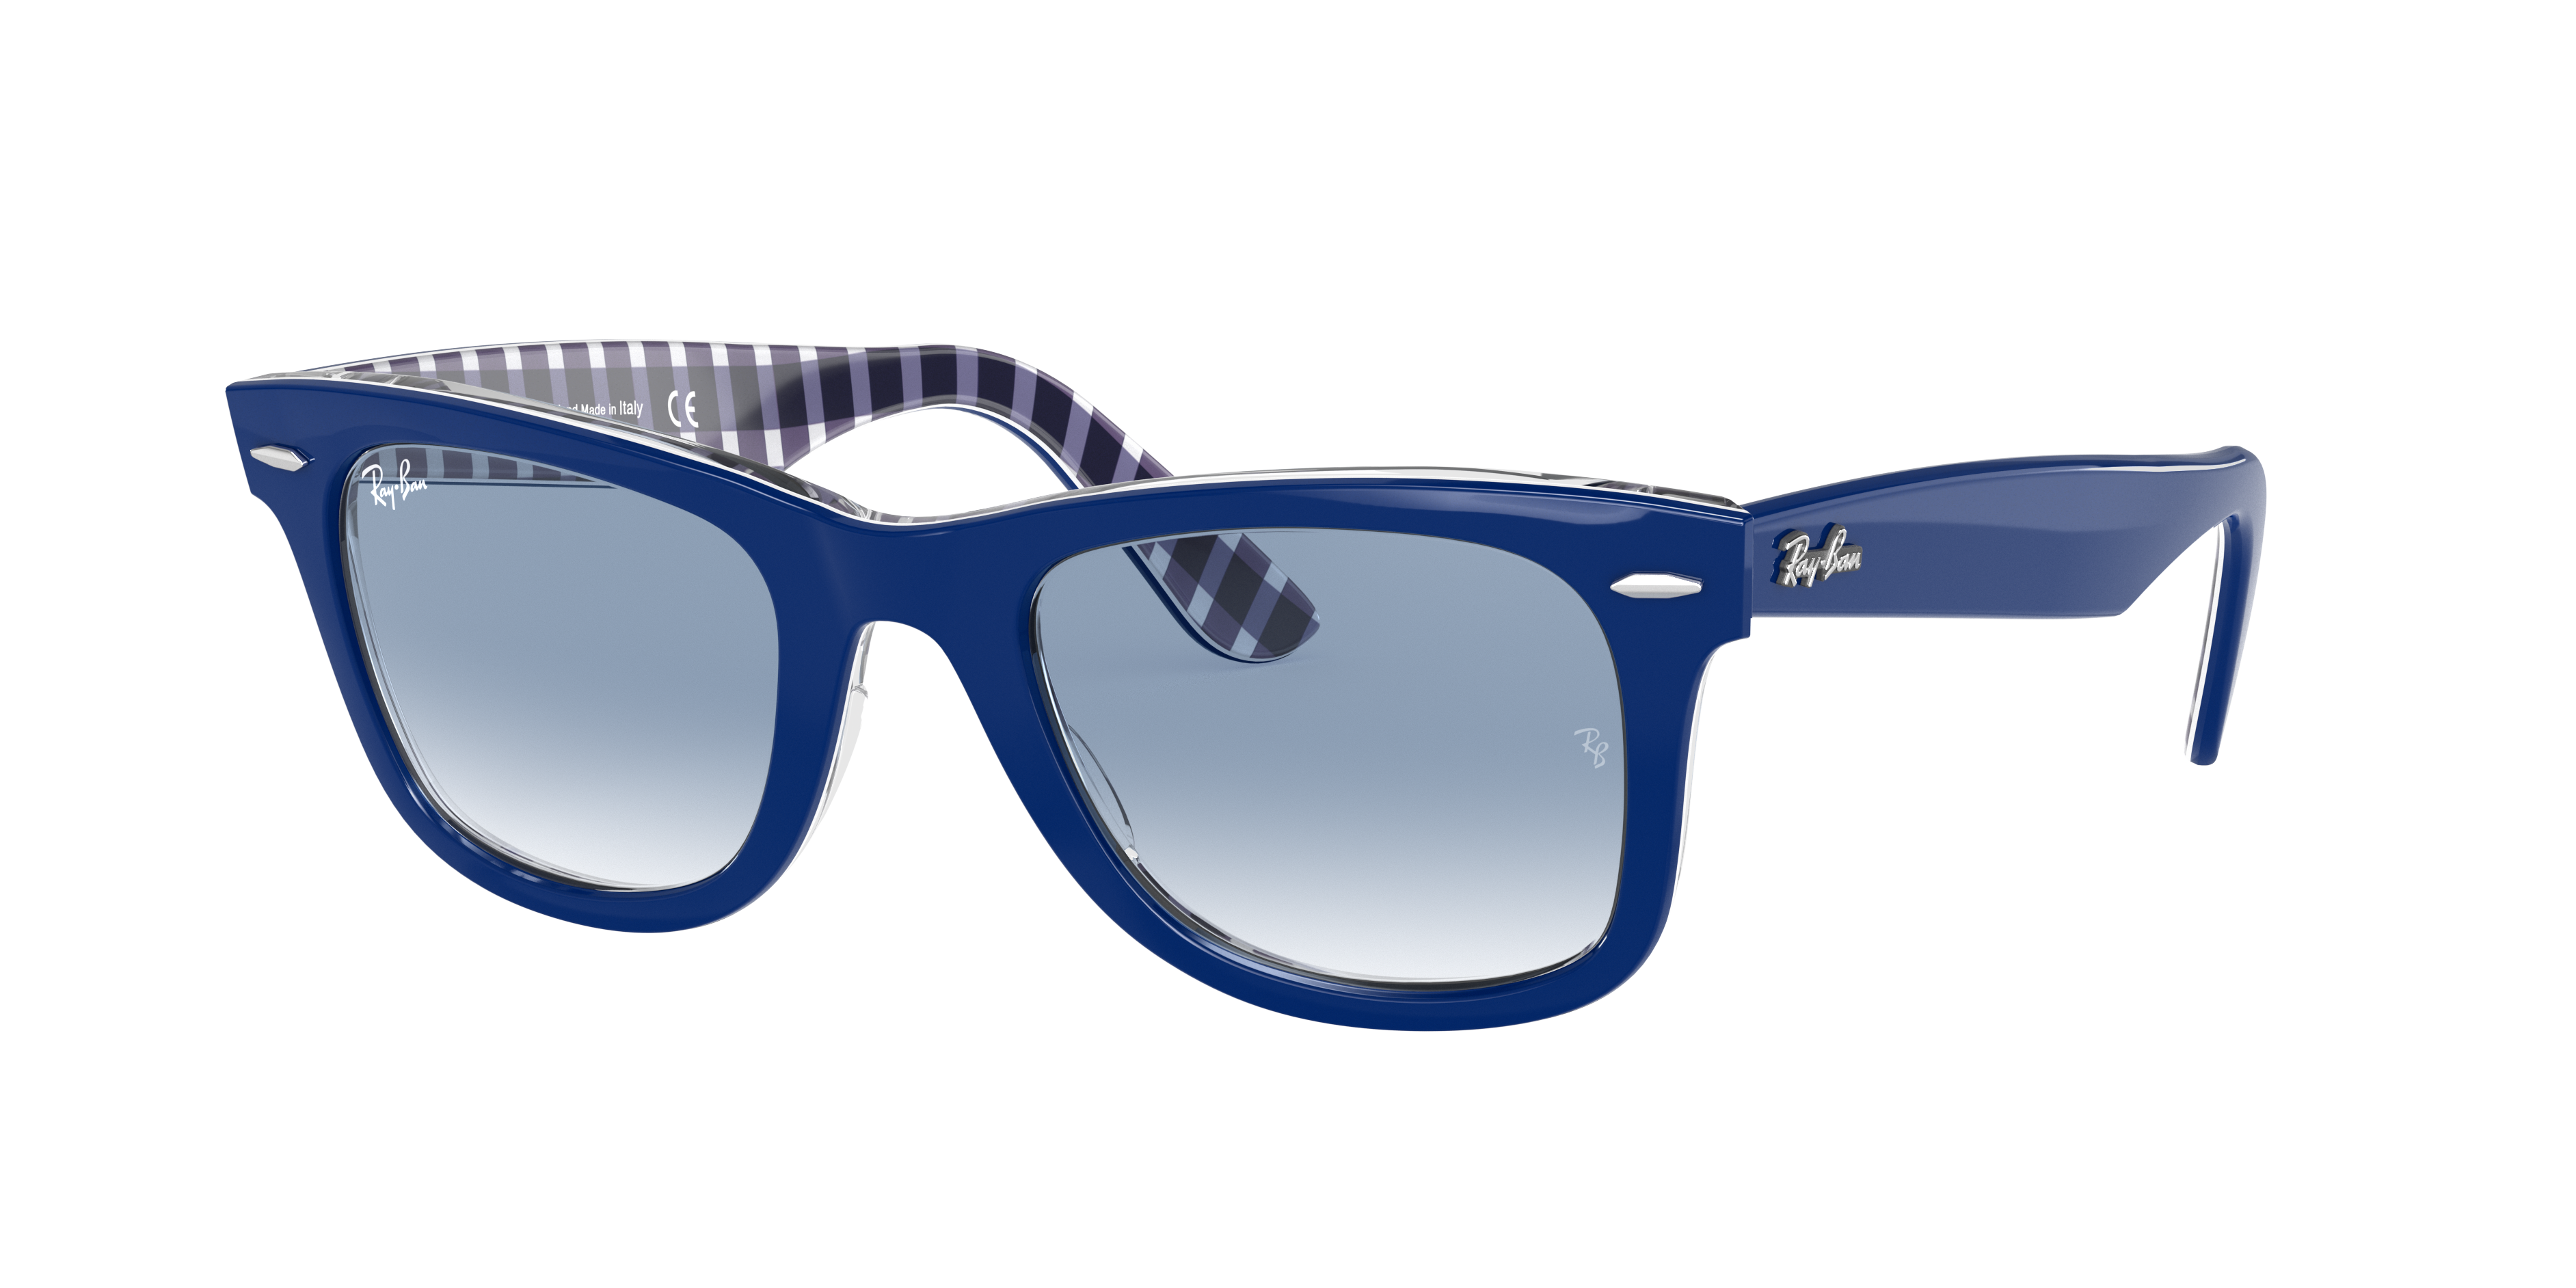 Aprender acerca 42+ imagen blue frame ray ban sunglasses